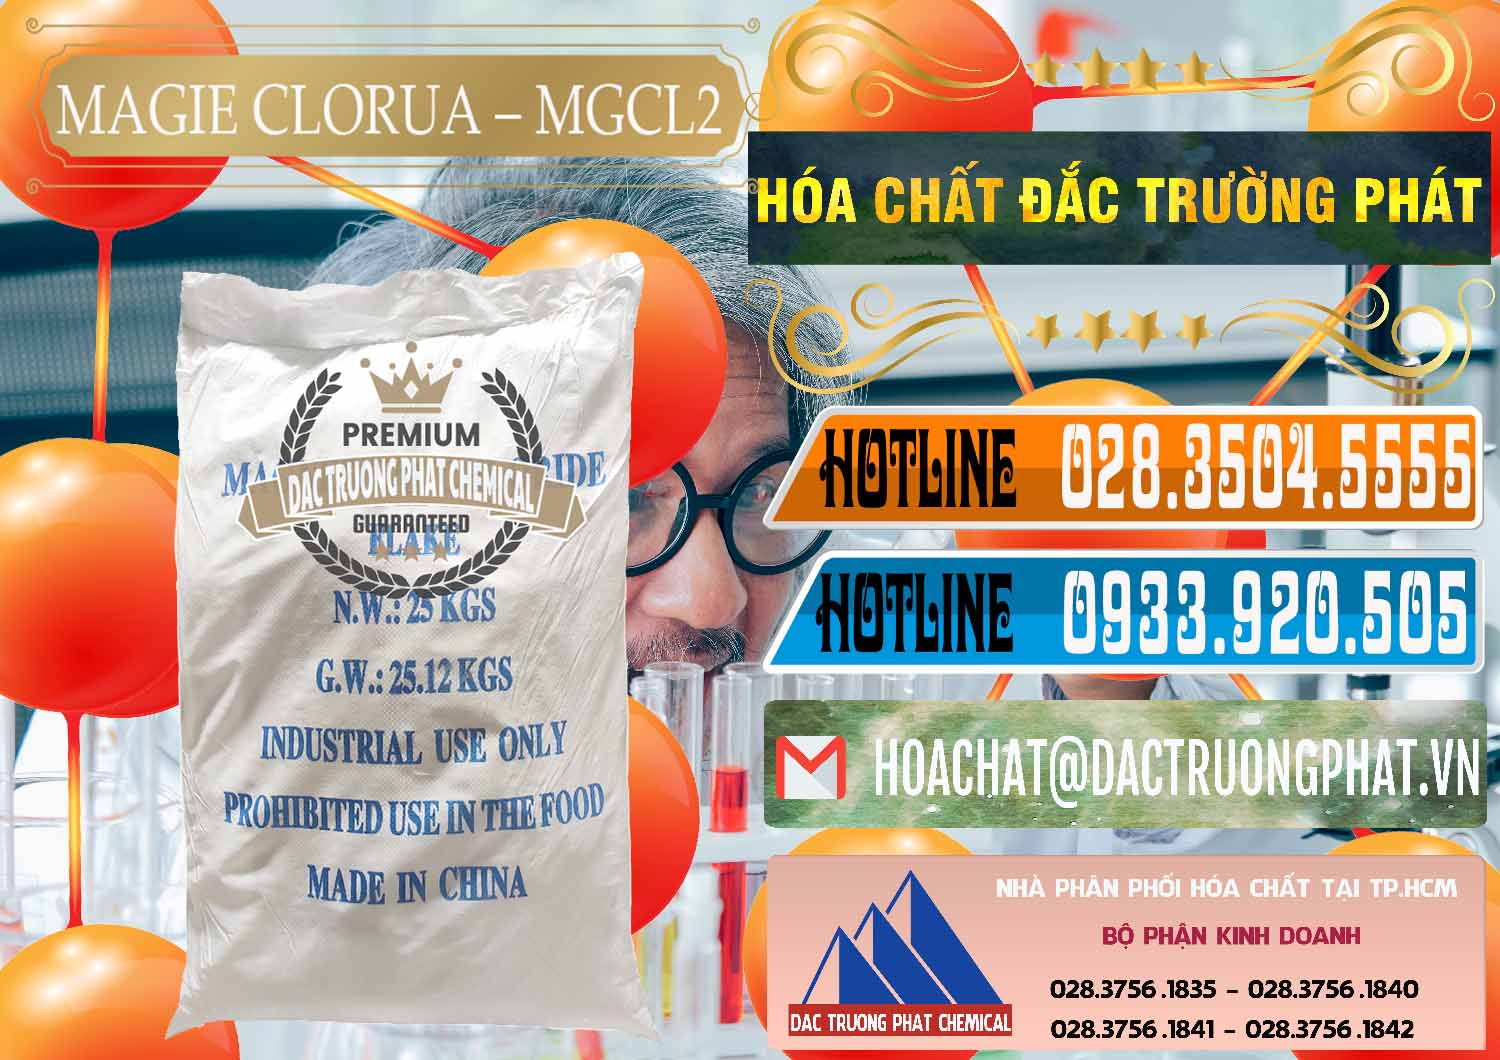 Cung ứng ( bán ) Magie Clorua – MGCL2 96% Dạng Vảy Trung Quốc China - 0091 - Công ty chuyên cung ứng - phân phối hóa chất tại TP.HCM - stmp.net